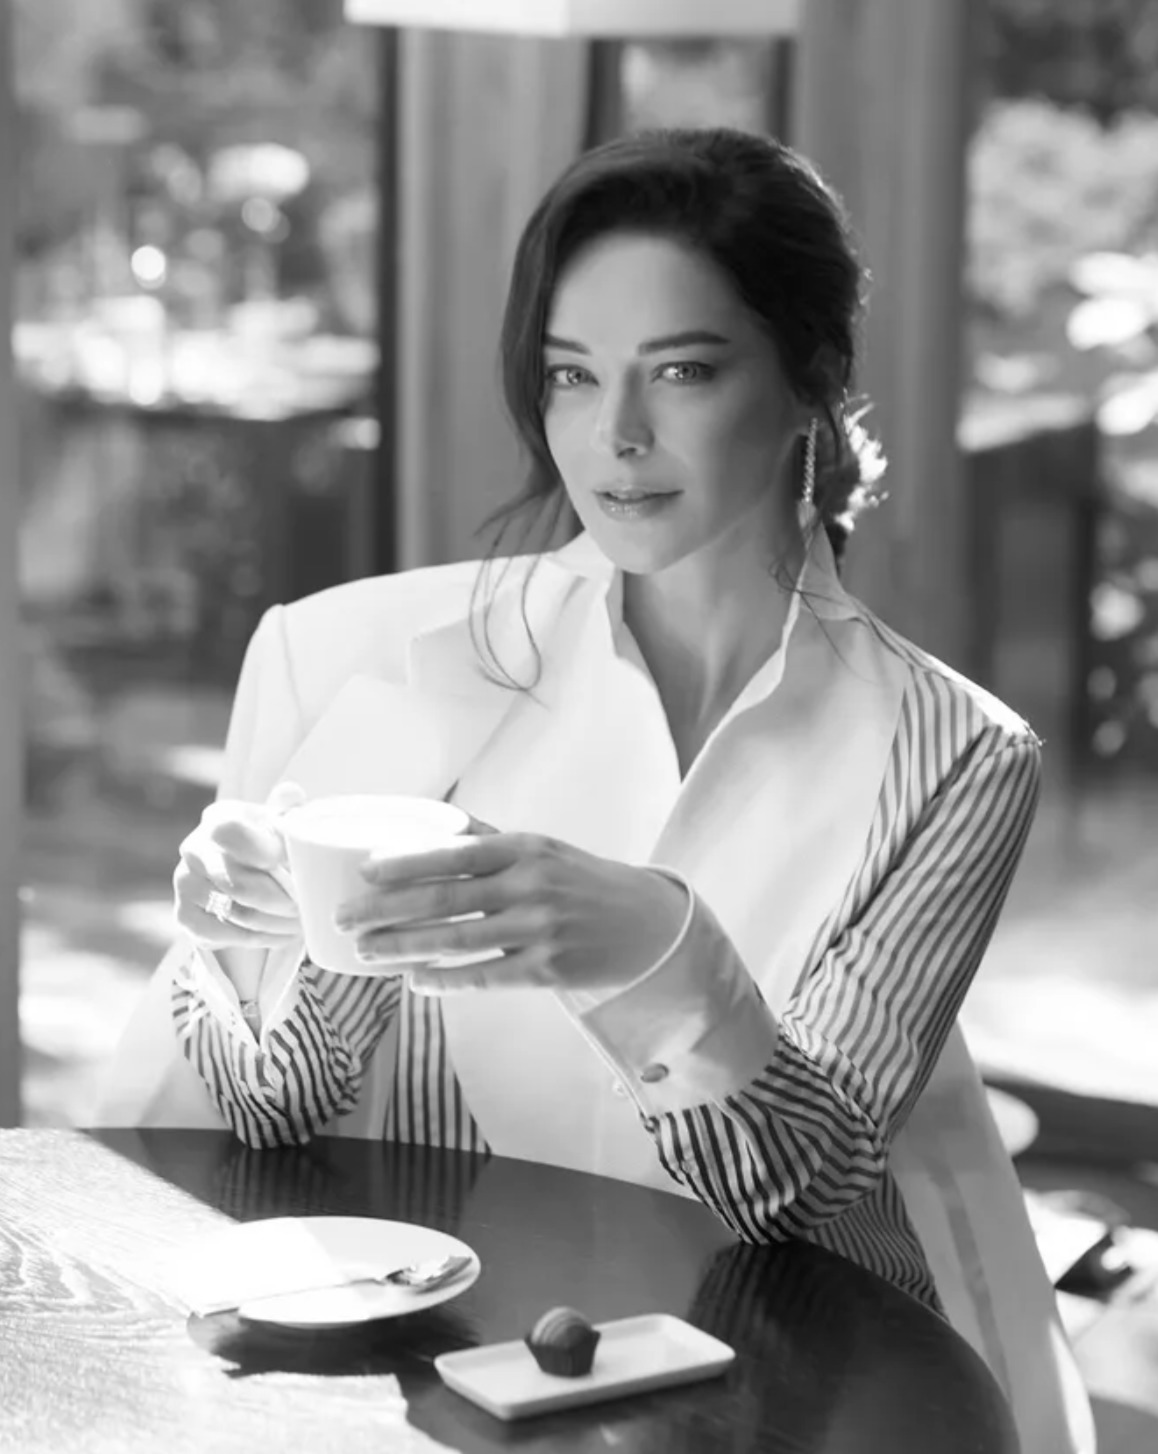 Марина Александрова показала, как провела время в кафе с чашкой кофе в  руках - Первый женский — новости шоу-бизнеса, культура, Life Style